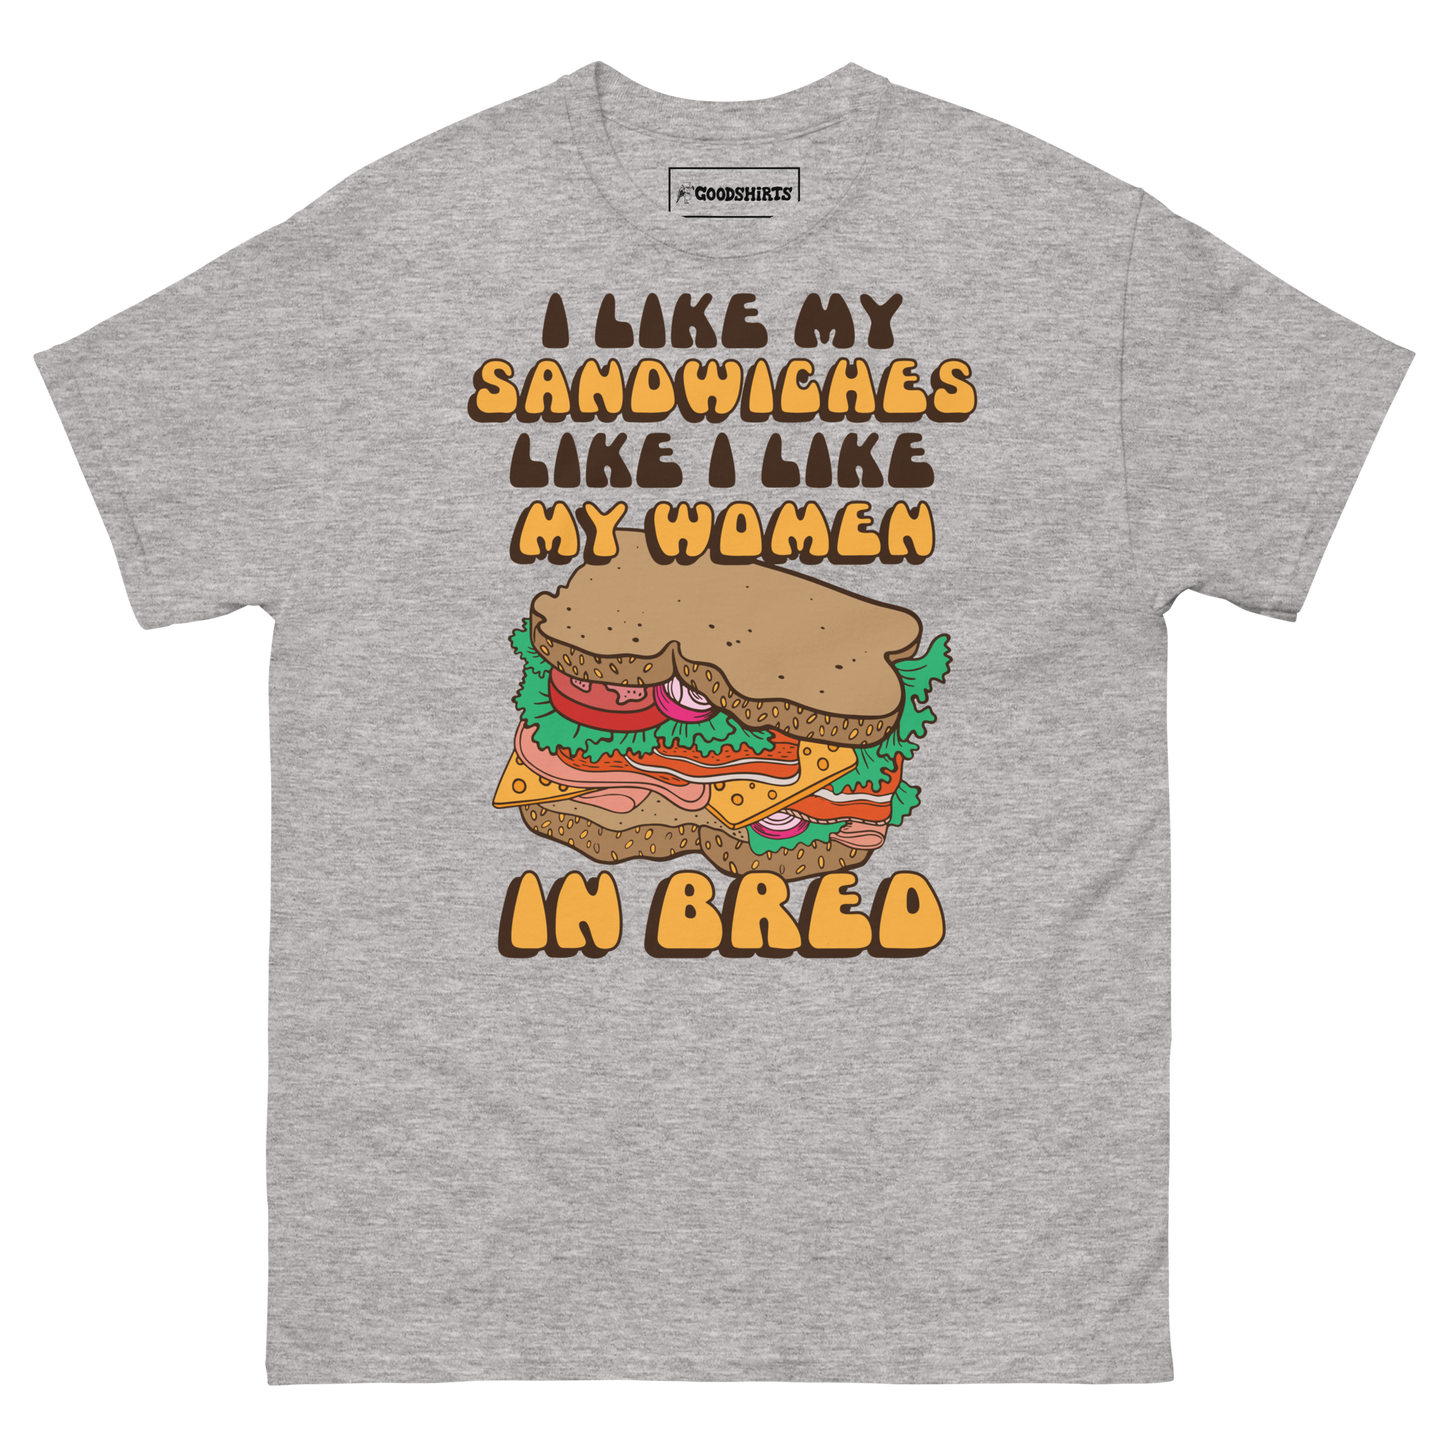 I Like My Sandwiches Like I Like My Woman In Bred.